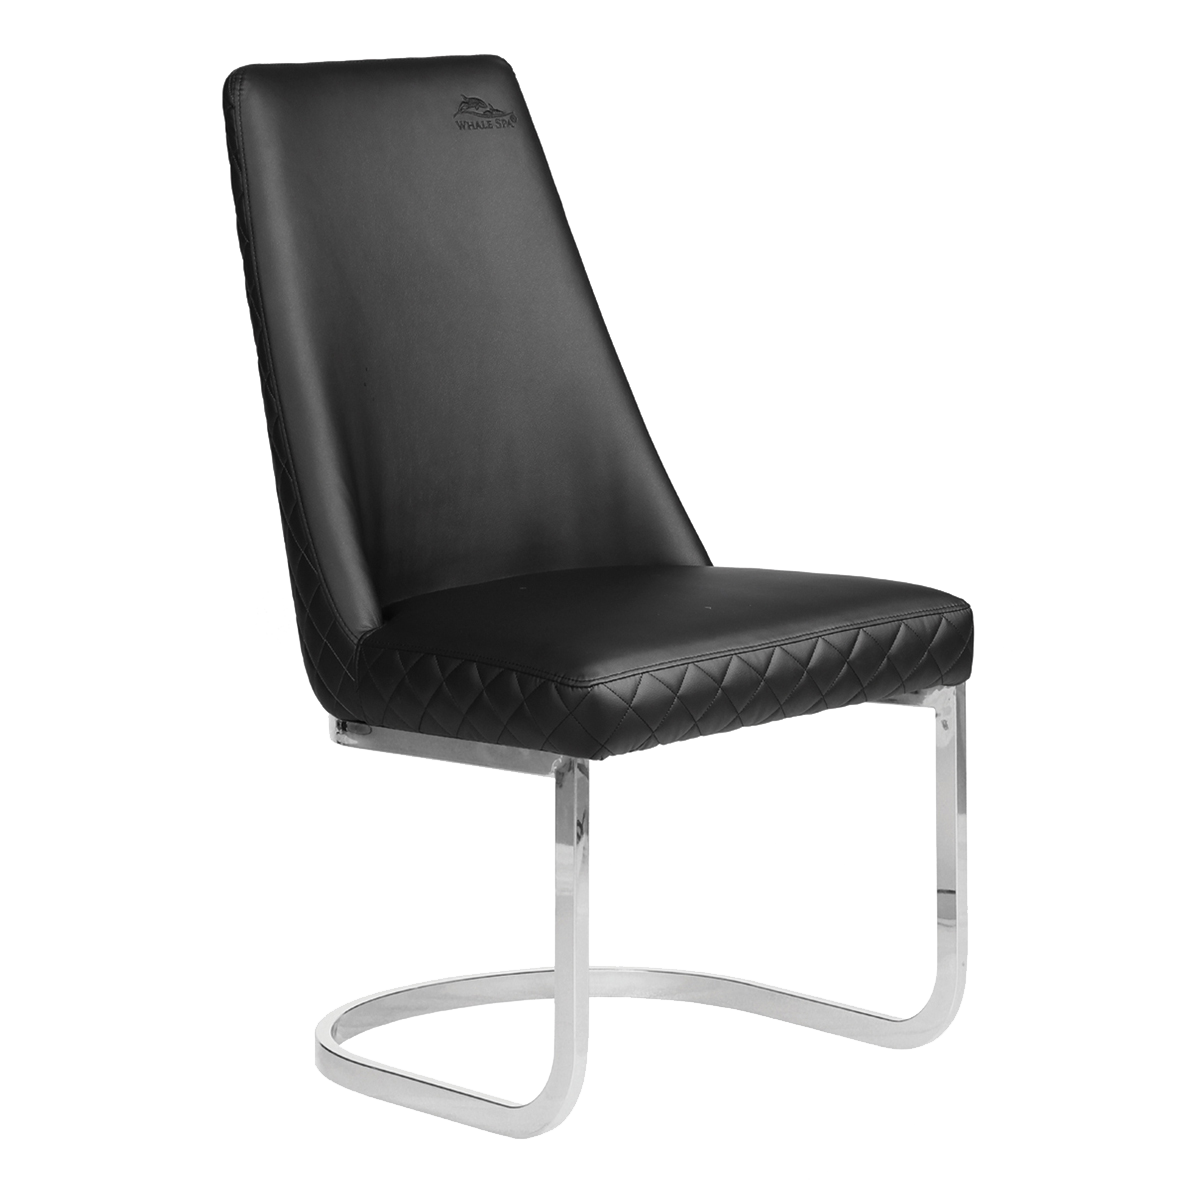 Whale Spa Black Customer Chair Diamond 8109 Nail Salon Customer Chair | Salon and Spa Furniture